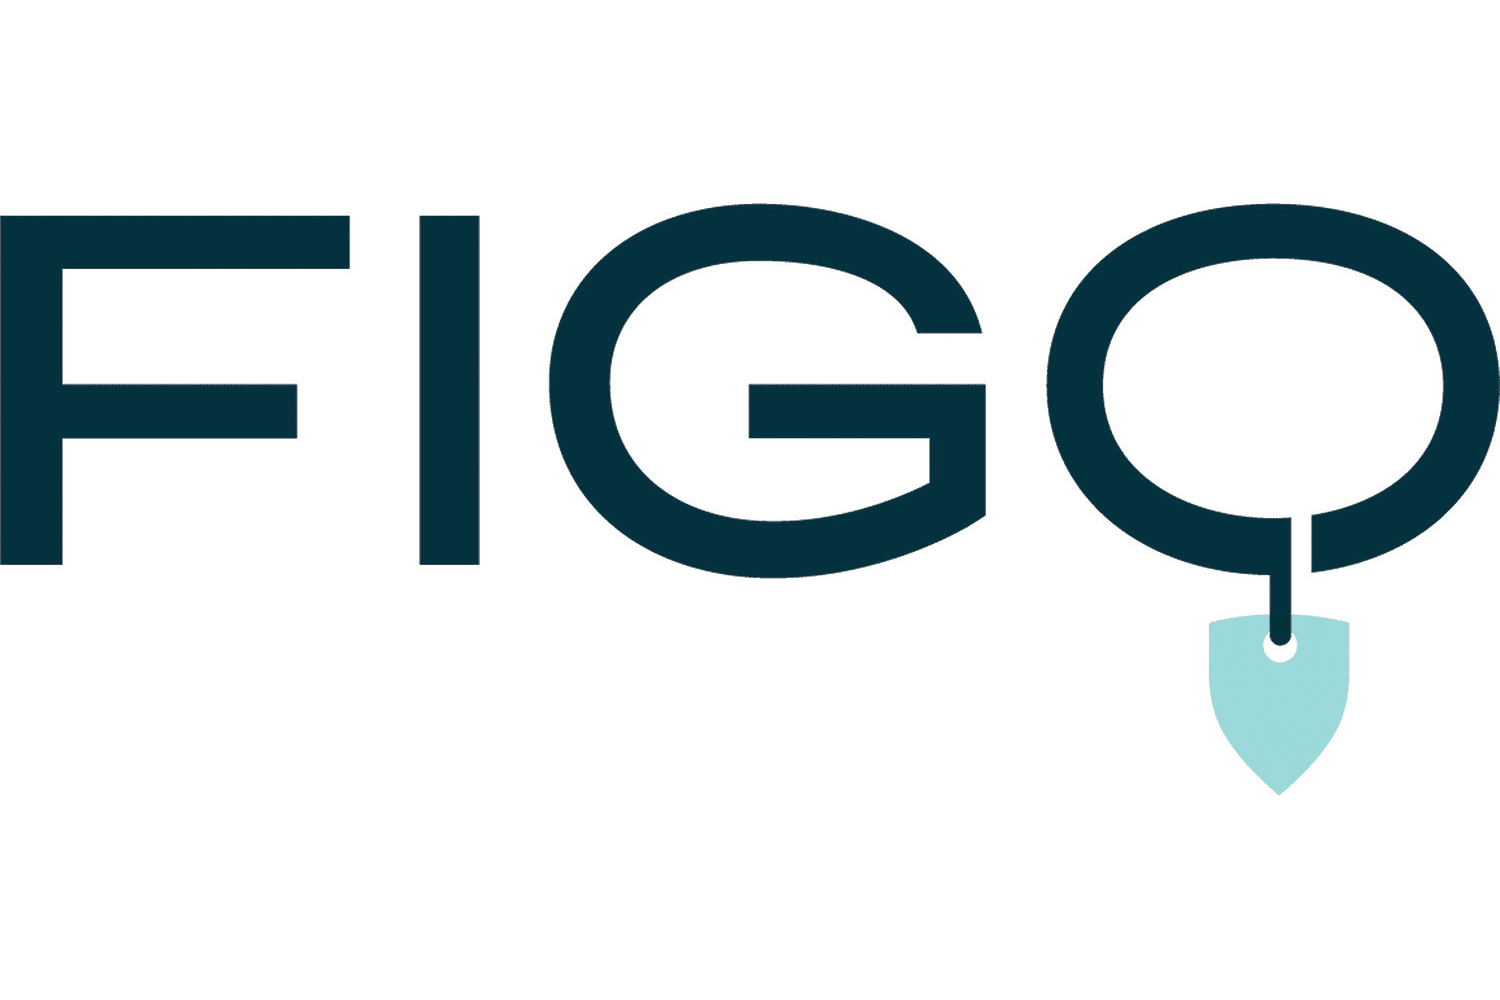 FIGO review